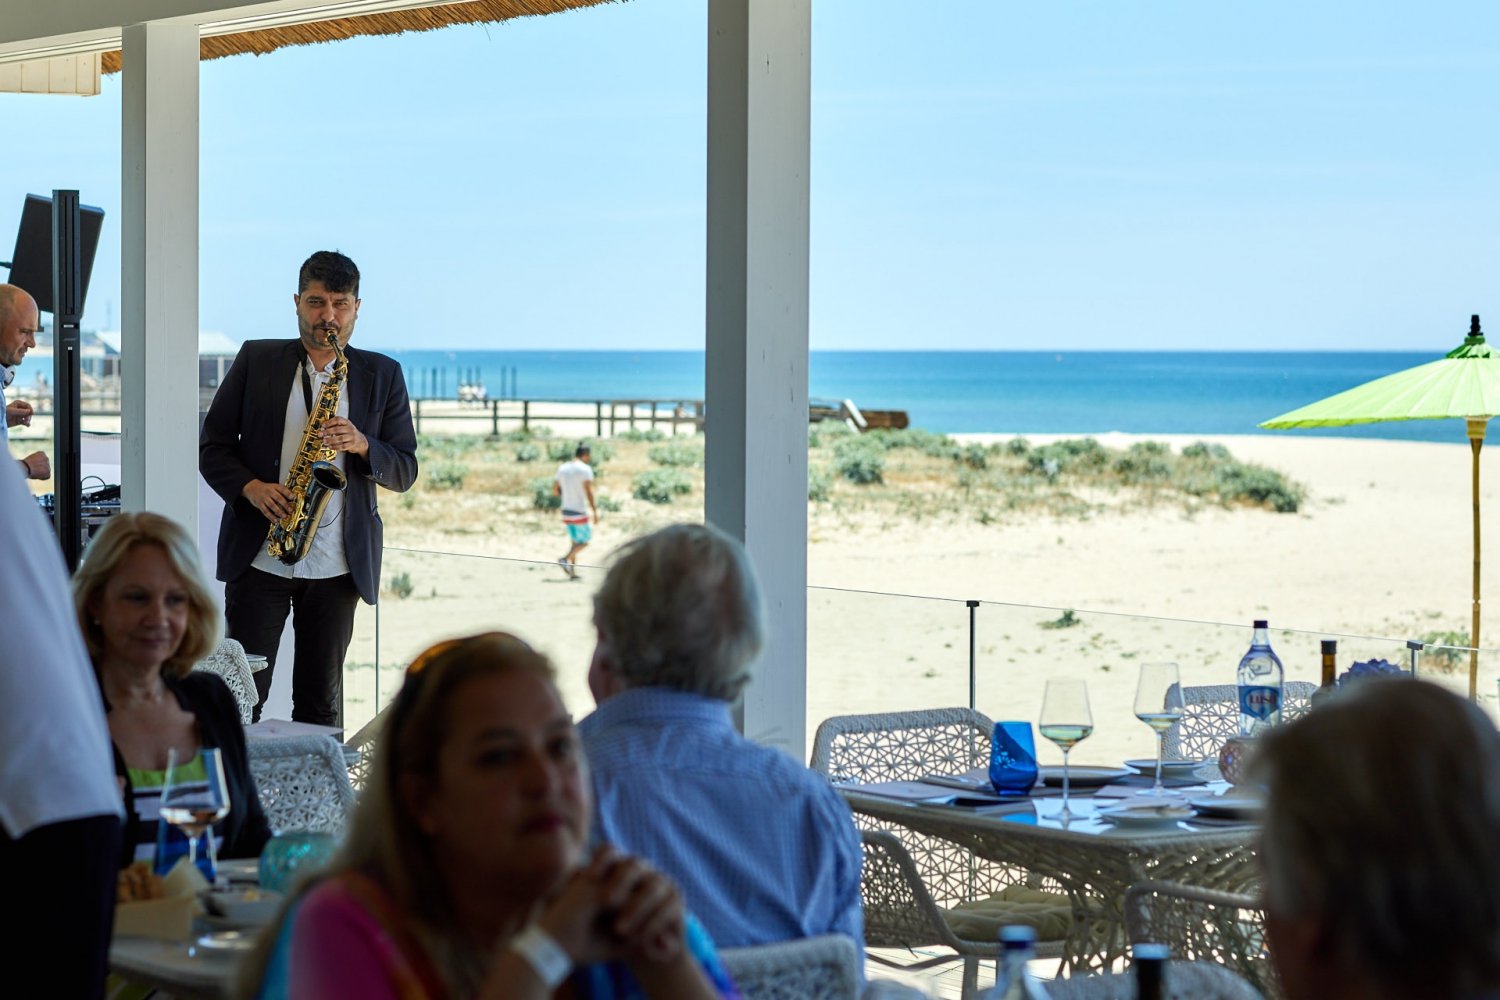 Best Child Friendly Restaurants in Algarve